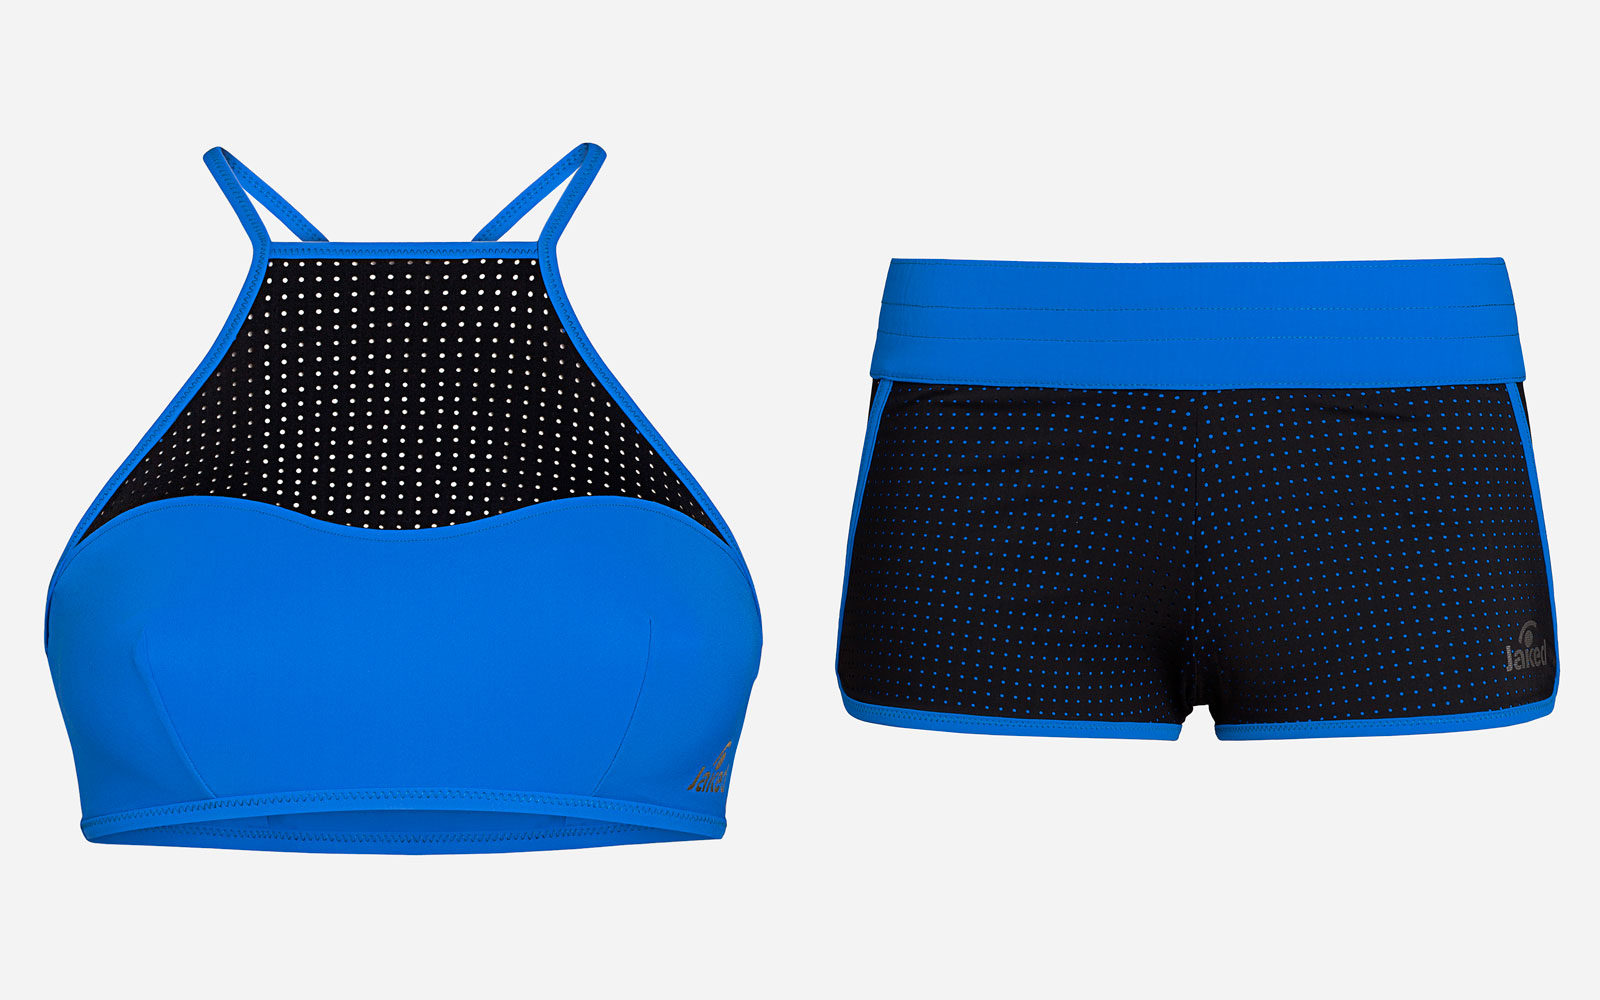 Jaked short + top, bikini sportivo in tessuto che allontana il sudore dal corpo, euro 39,90 + 34,90 rispettivamente